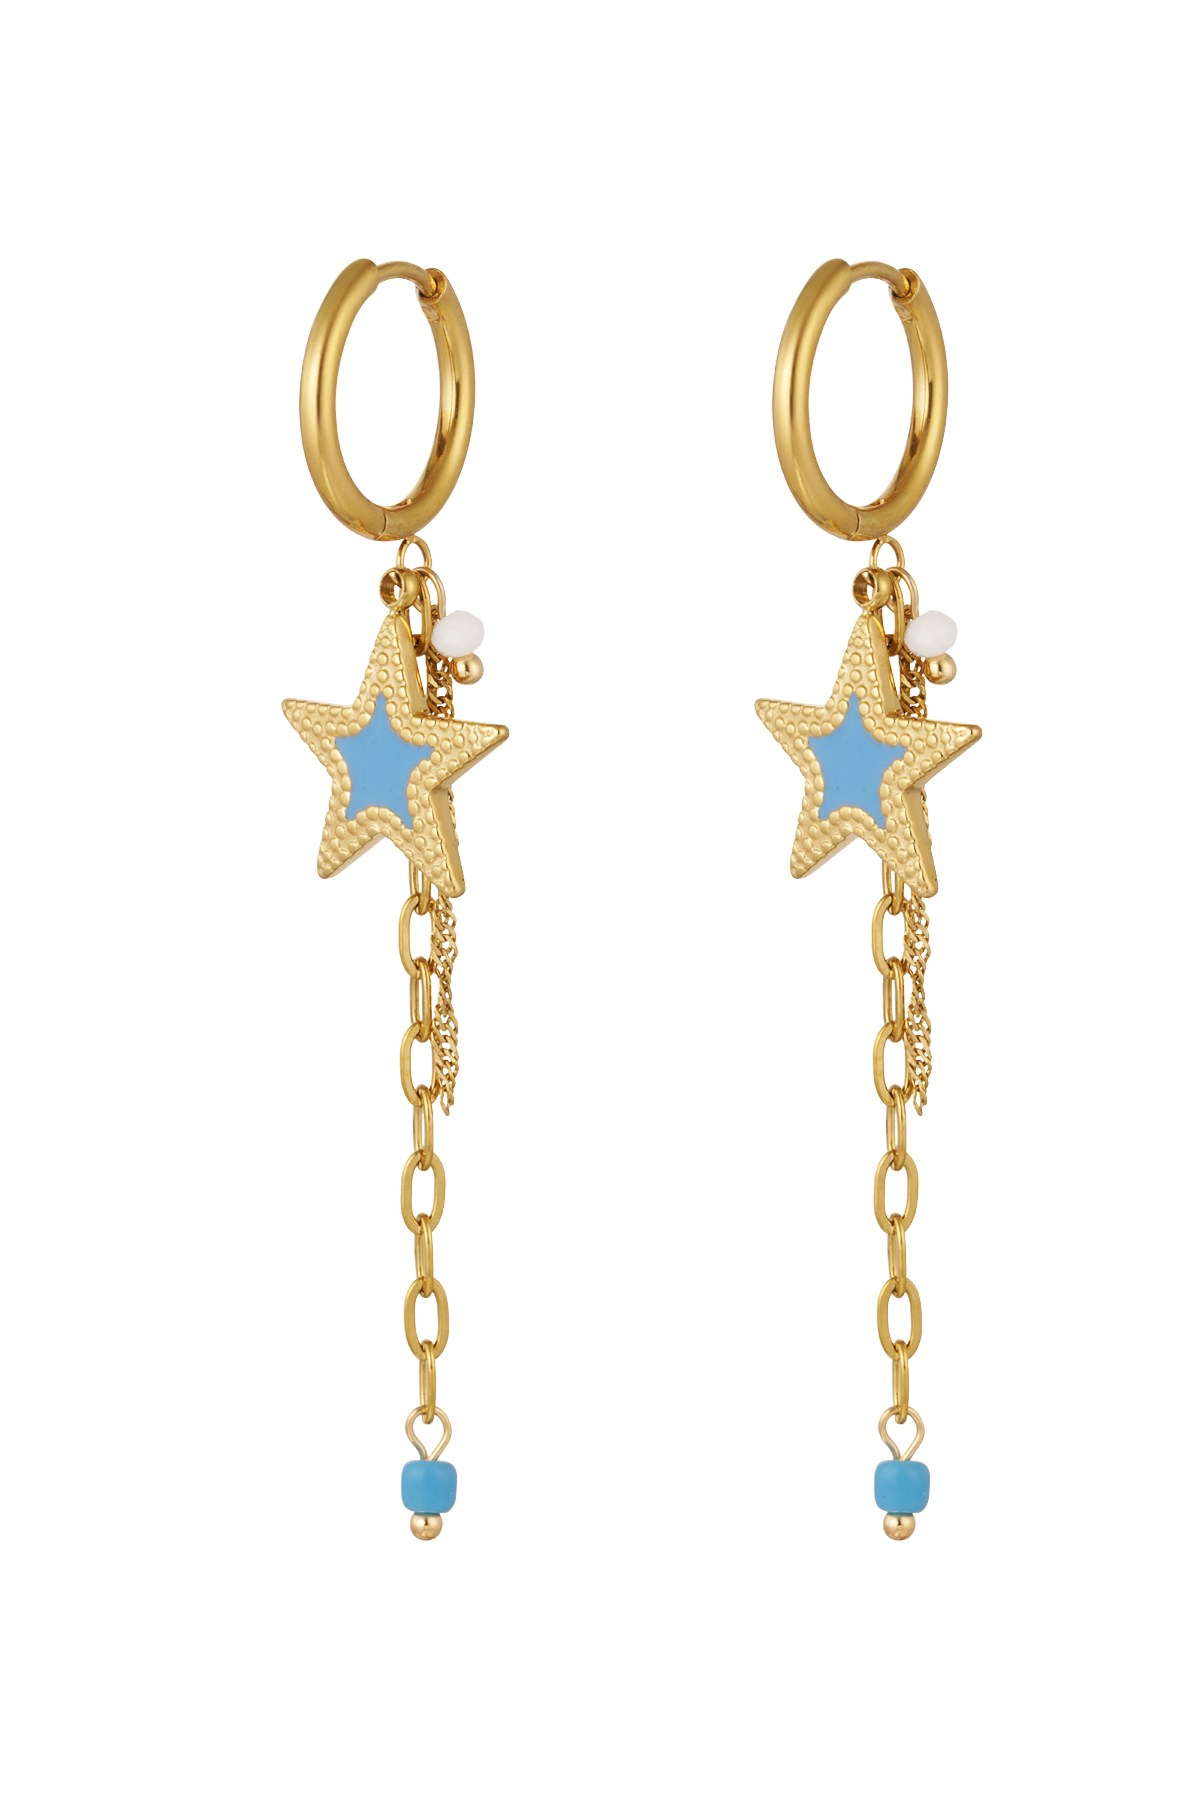 Ohrringe mit Kette und Stern blau - gold h5 